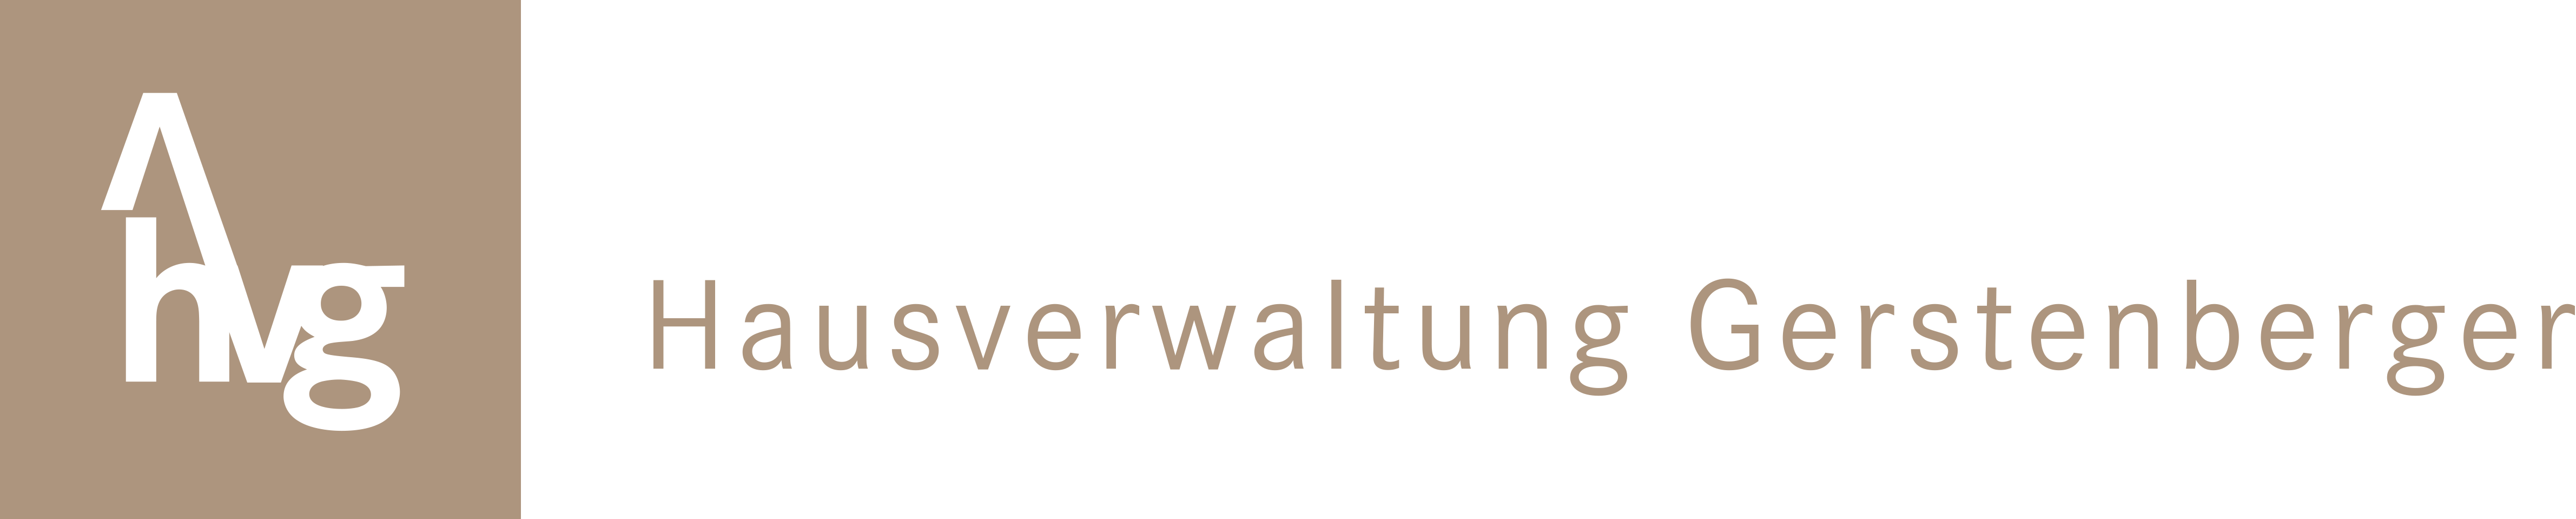 Logo Hausverwaltung Gerstenberger